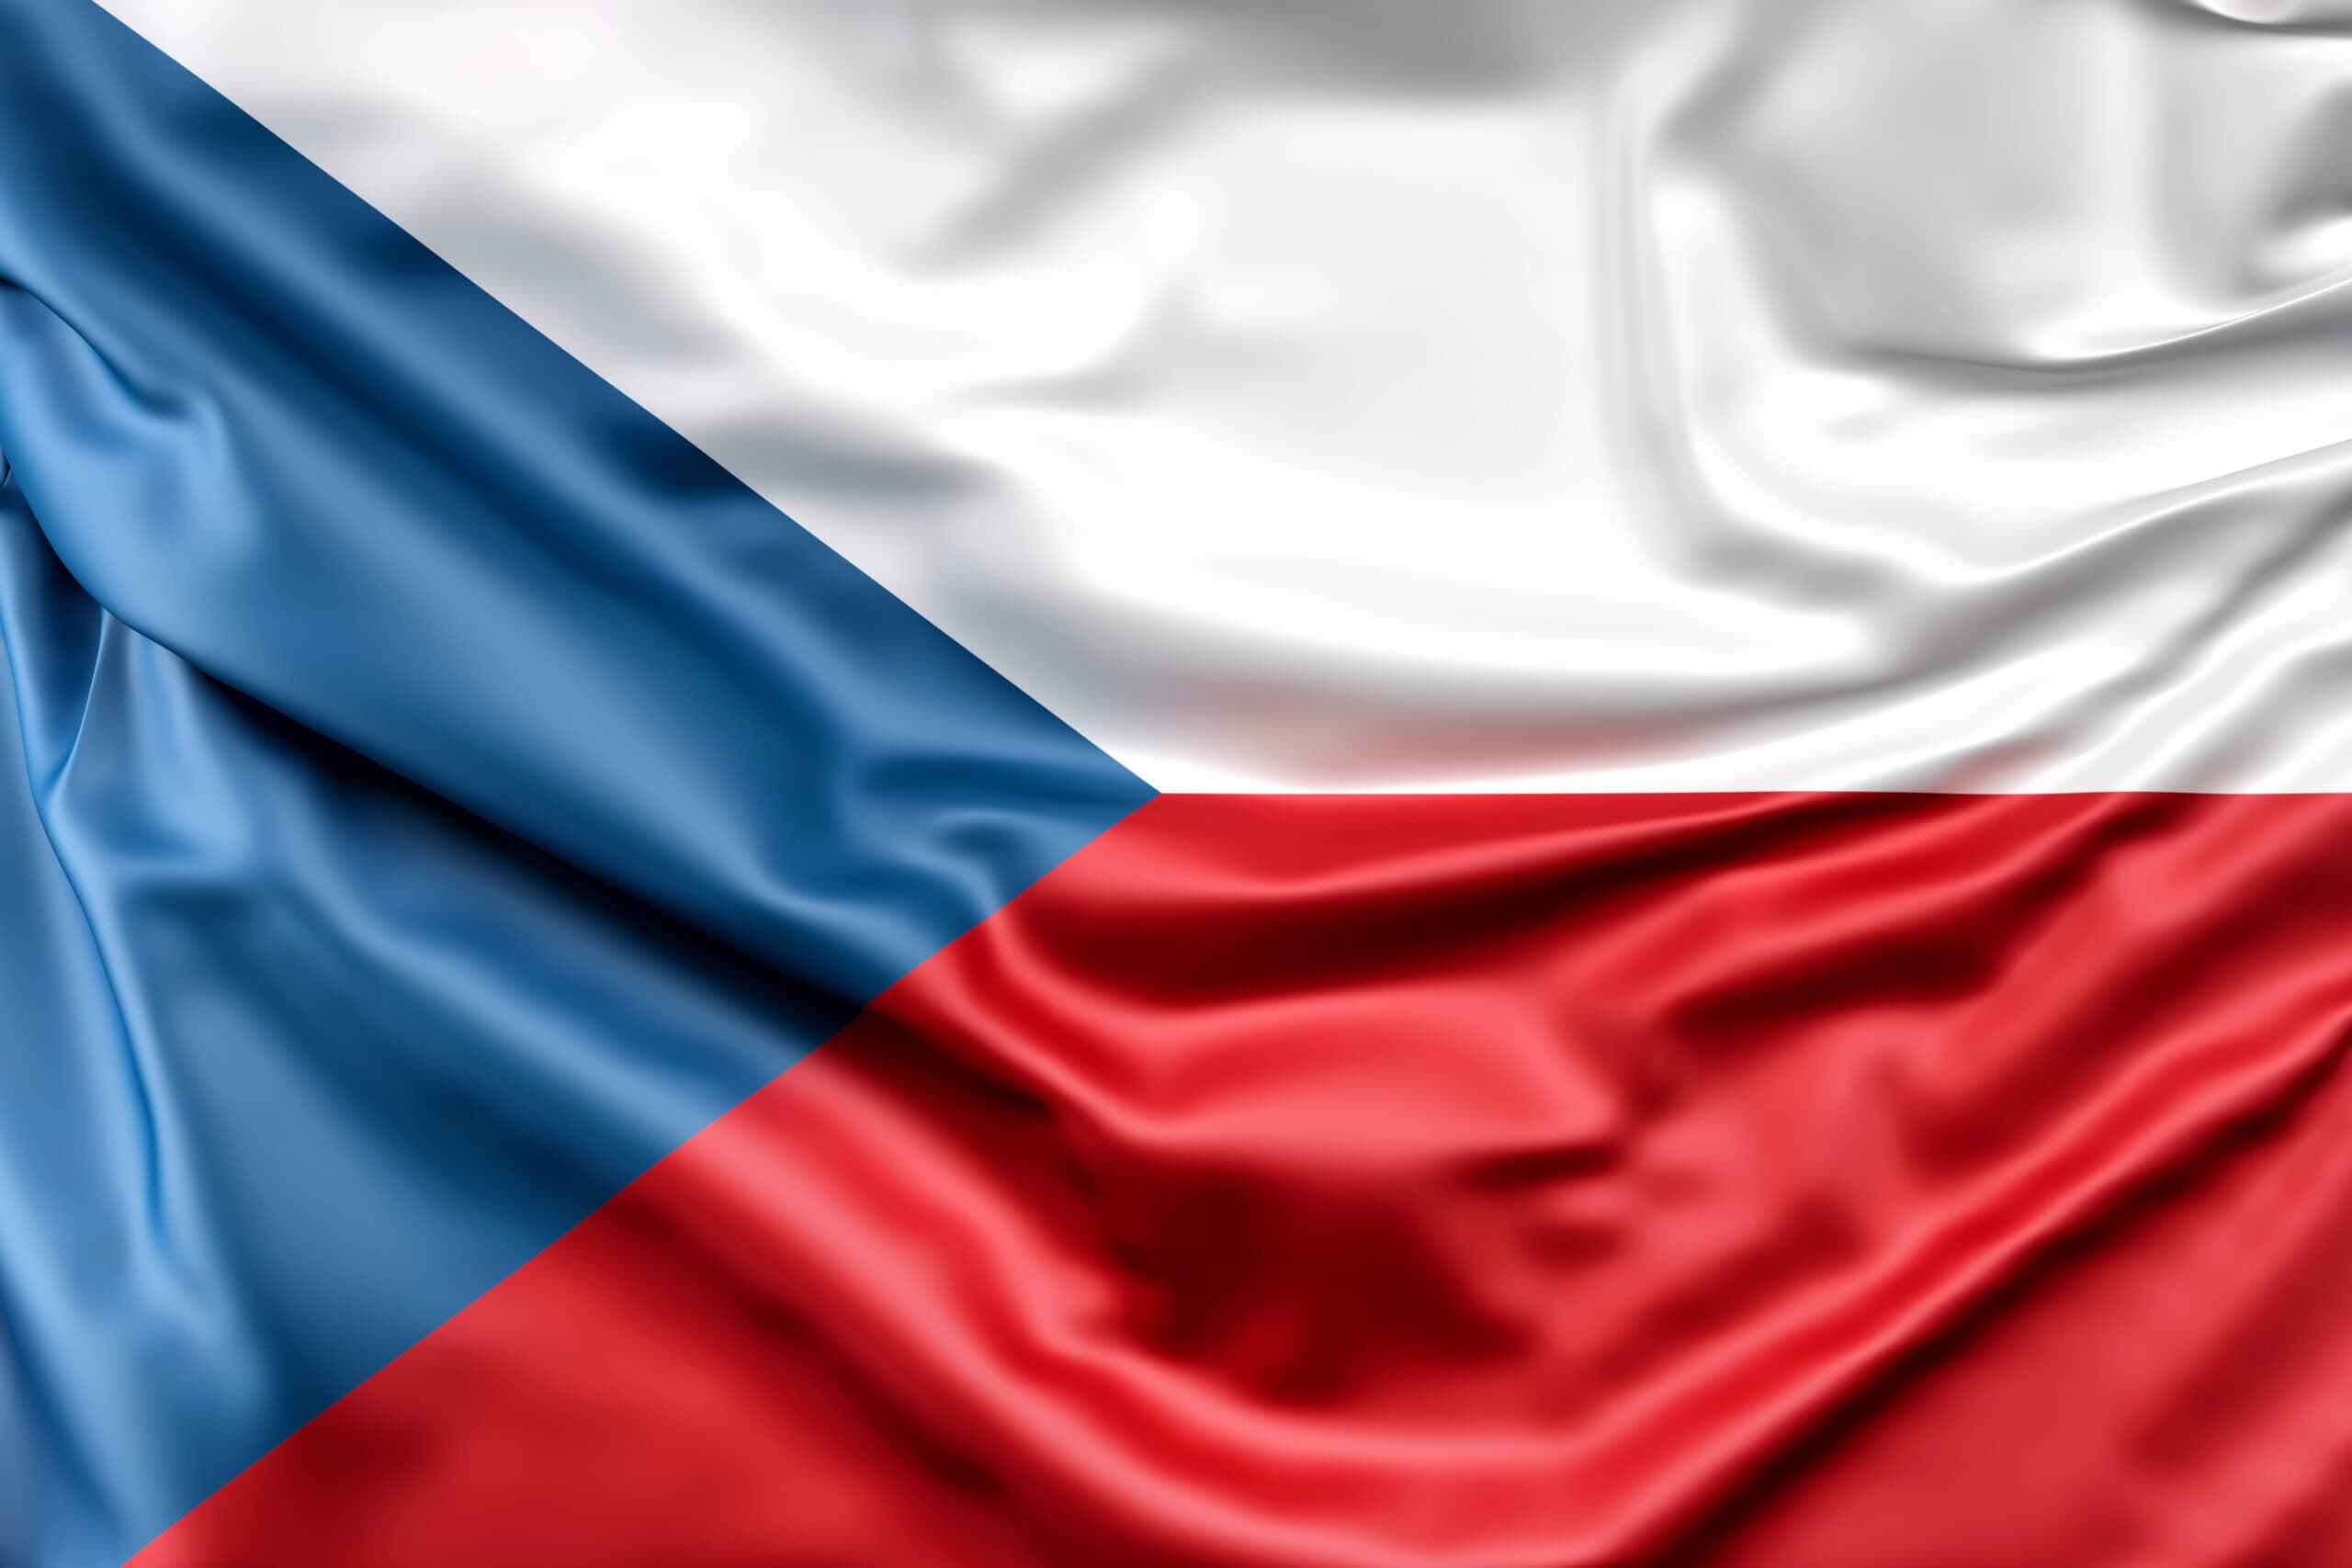 Палата депутатов Чехии назвала самой большой угрозой безопасности текущий российский режим, который она считает террористическим